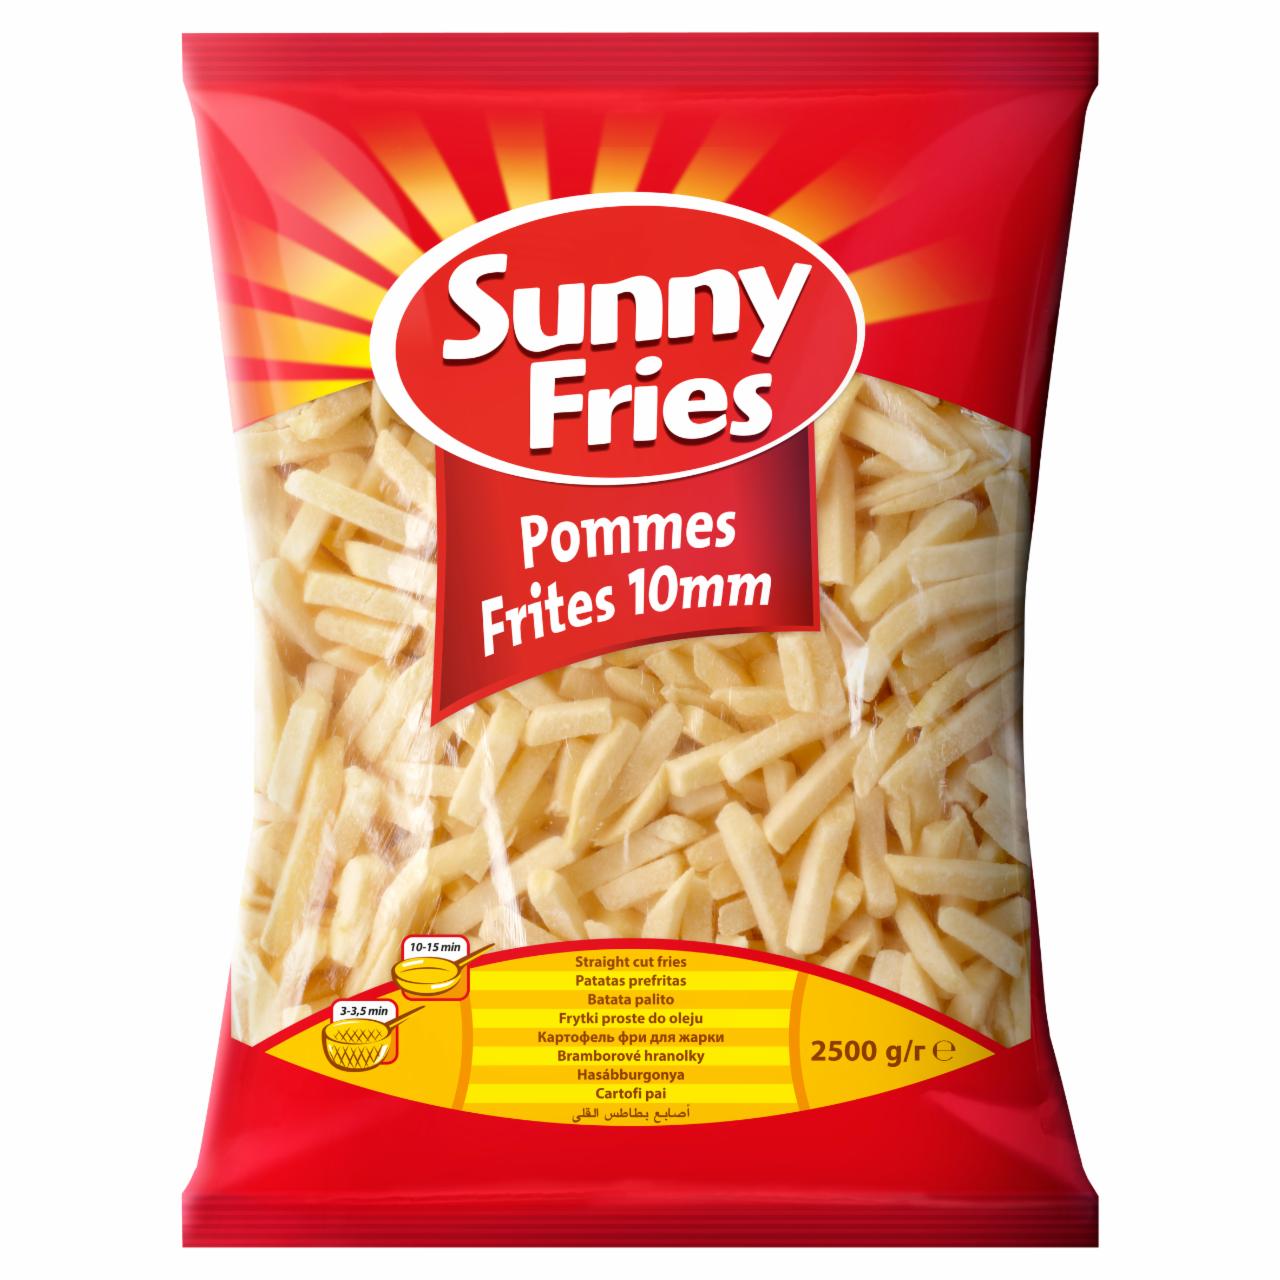 Zdjęcia - Sunny Fries Frytki proste do oleju 10 mm 2,5 kg